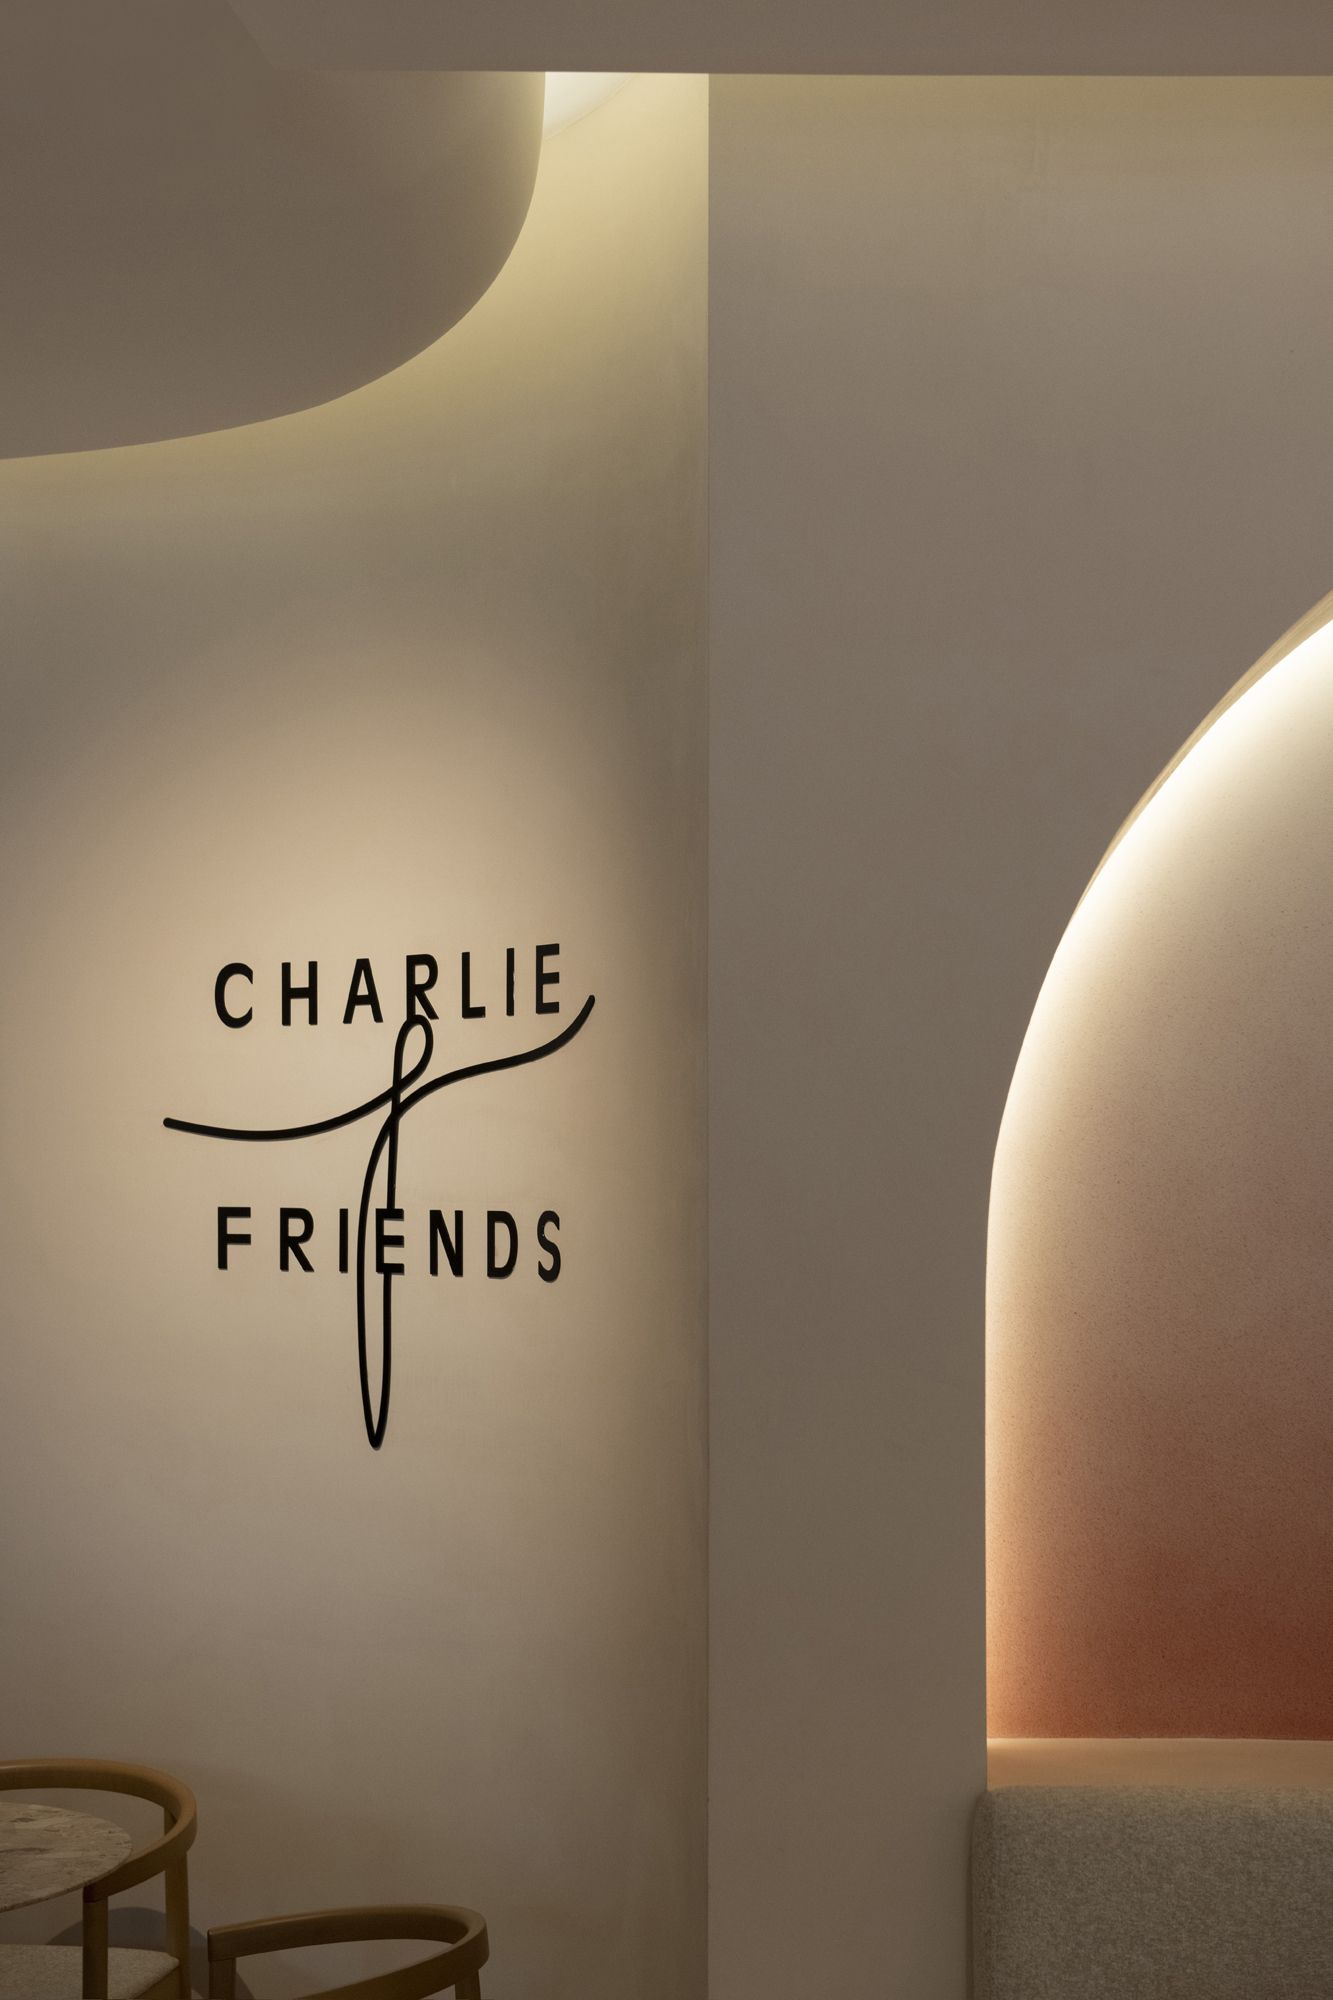 图片[7]|查理&amp；朋友餐厅|ART-Arrakis | 建筑室内设计的创新与灵感